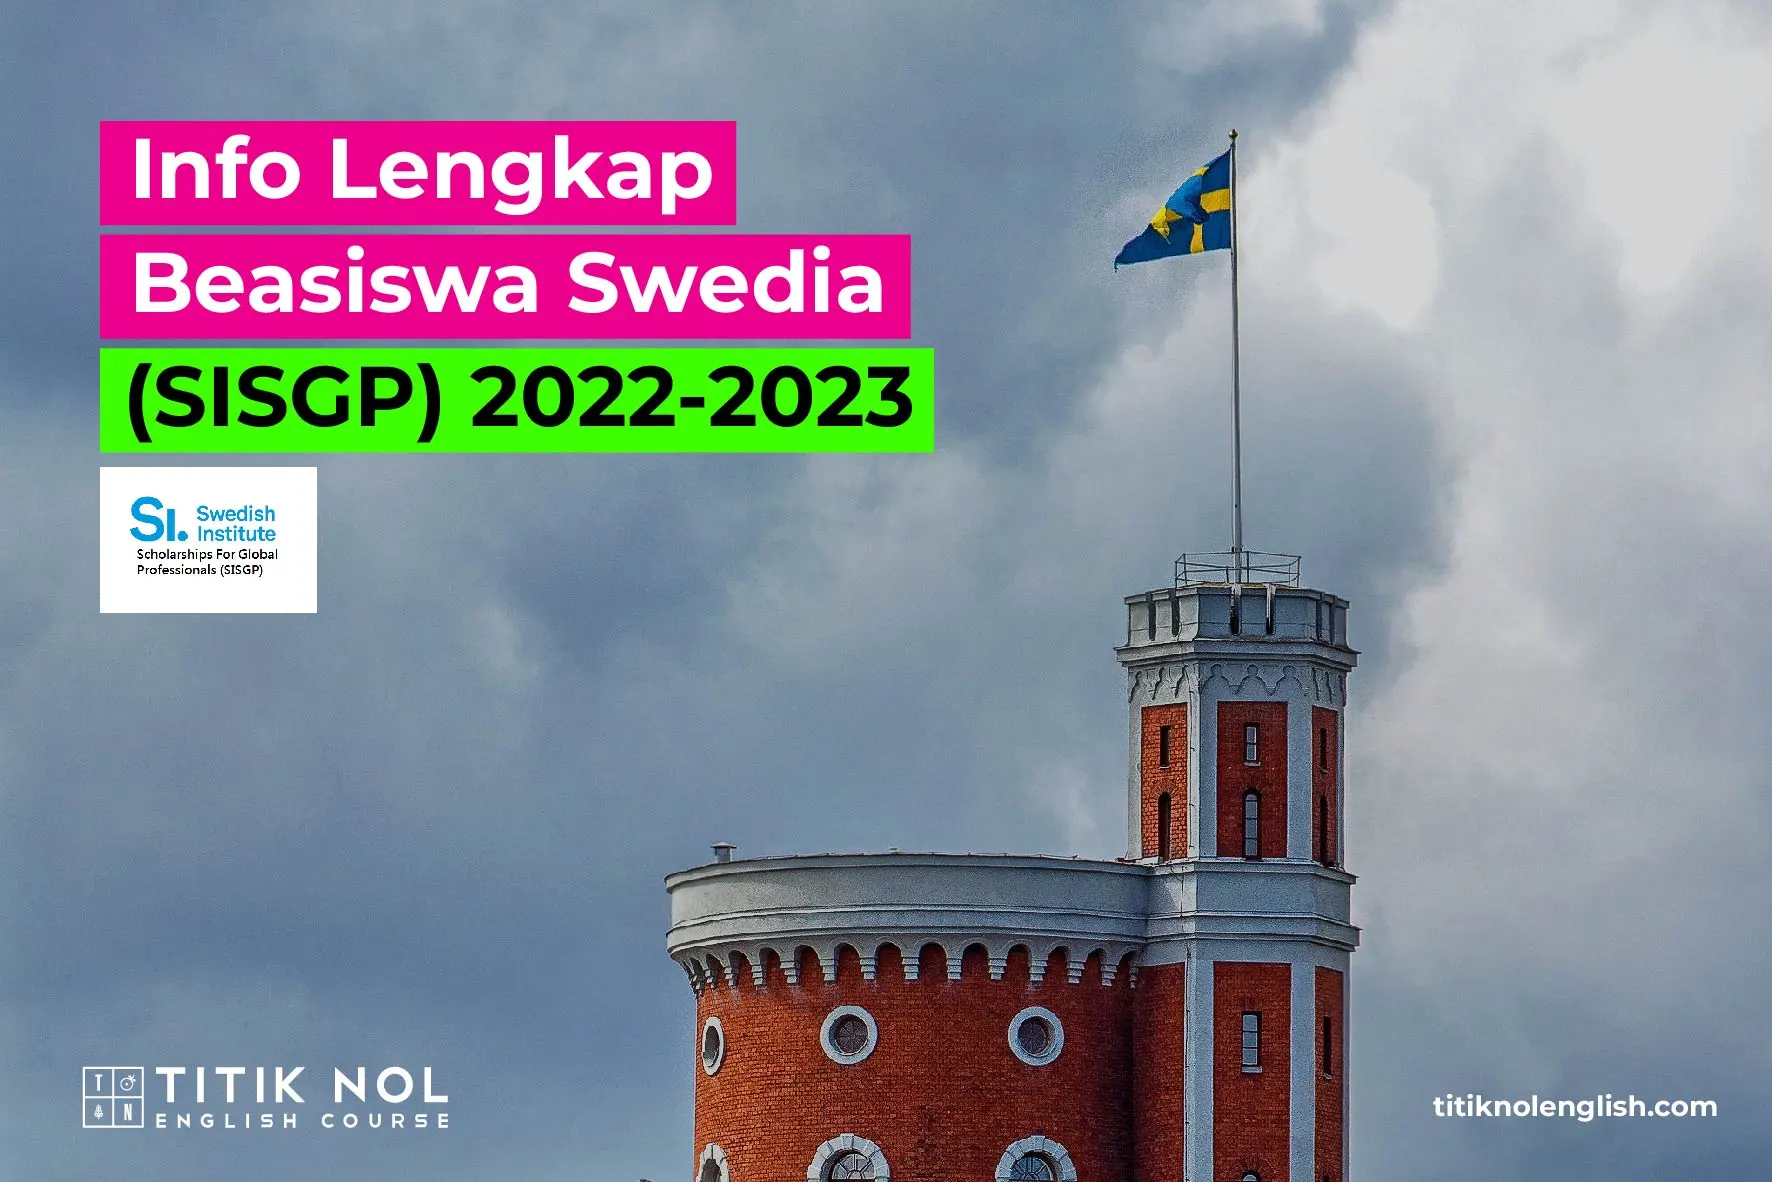 Info-Lengkap-Beasiswa-Swedia-_SISGP_-2022-2023-05